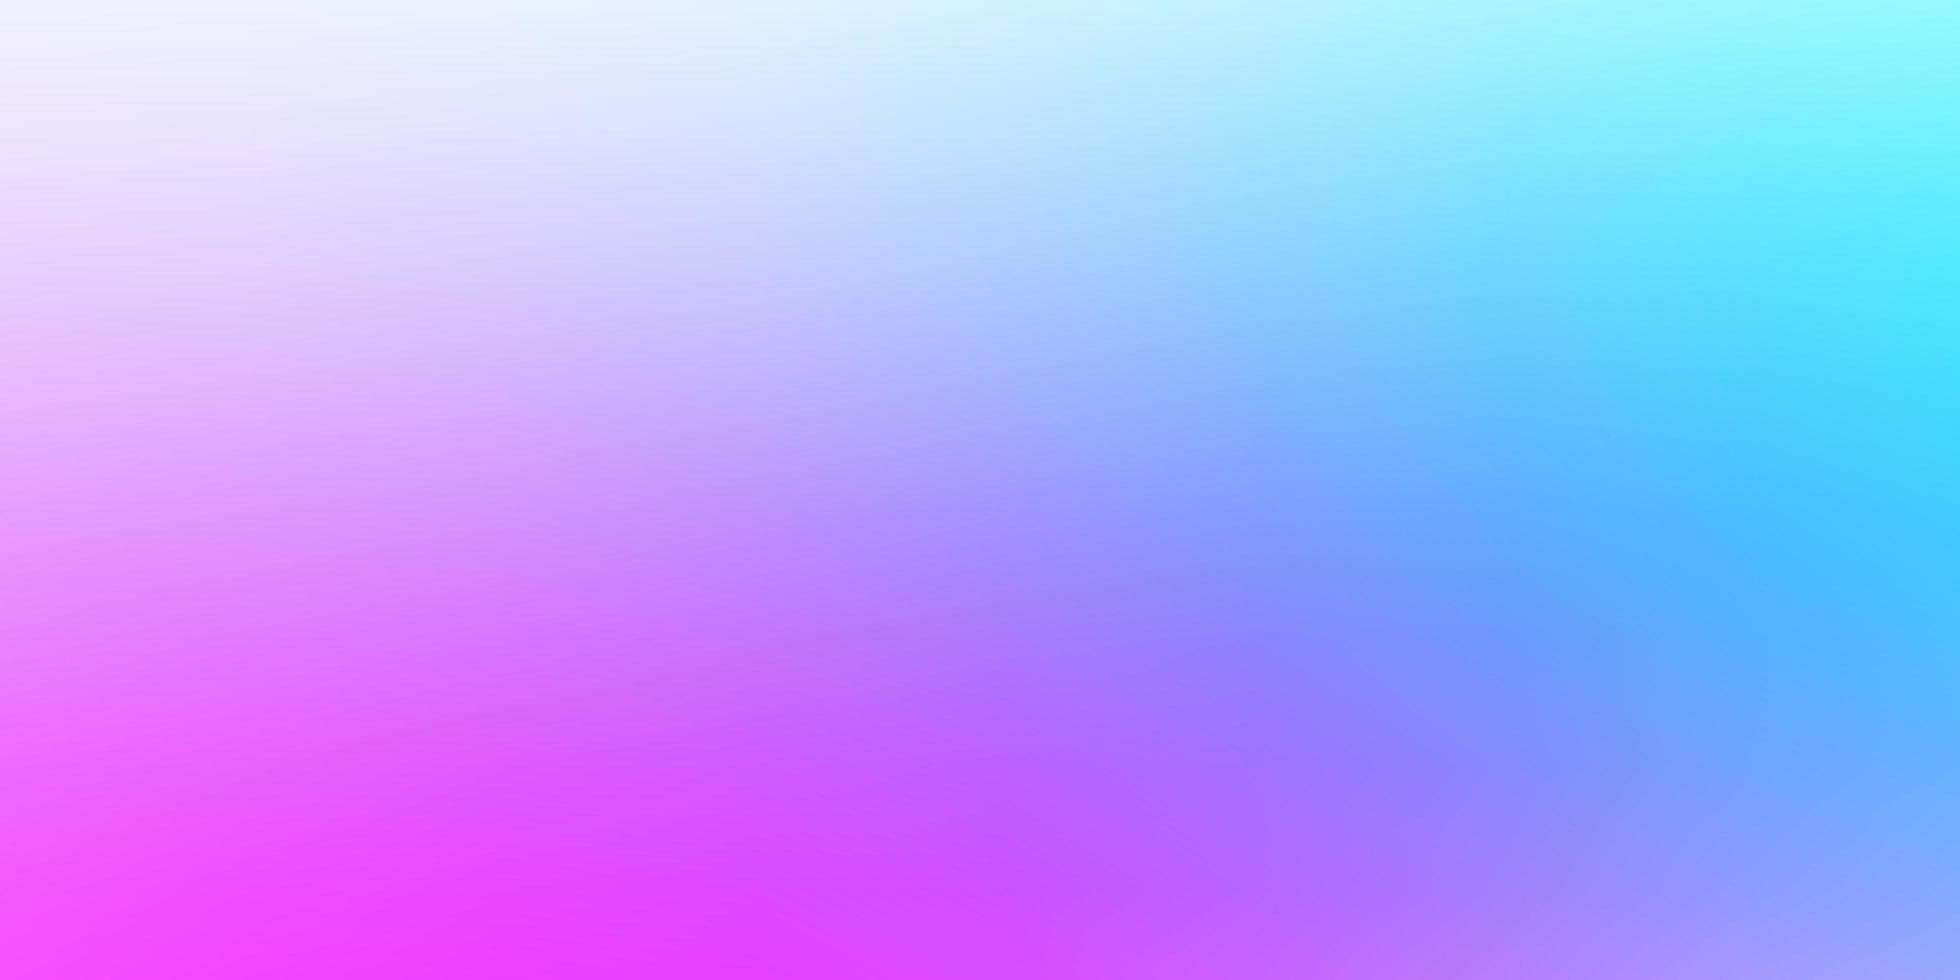 rosa claro, azul vector abstracto fondo borroso.